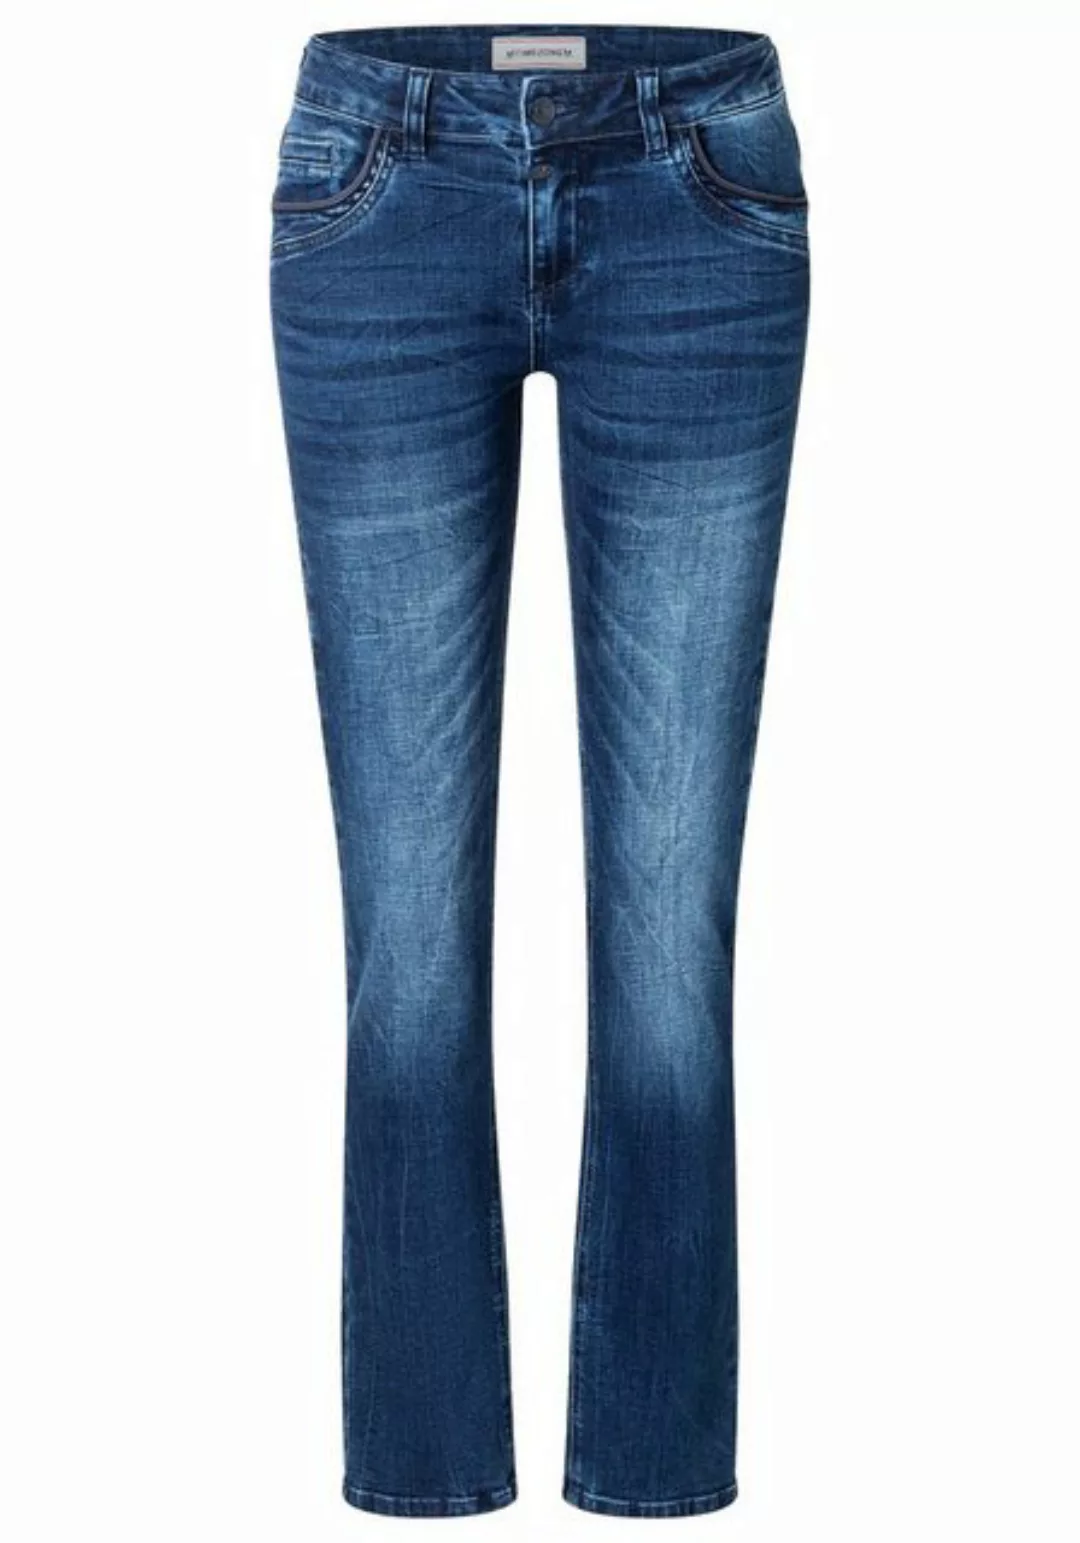 TIMEZONE 5-Pocket-Jeans günstig online kaufen